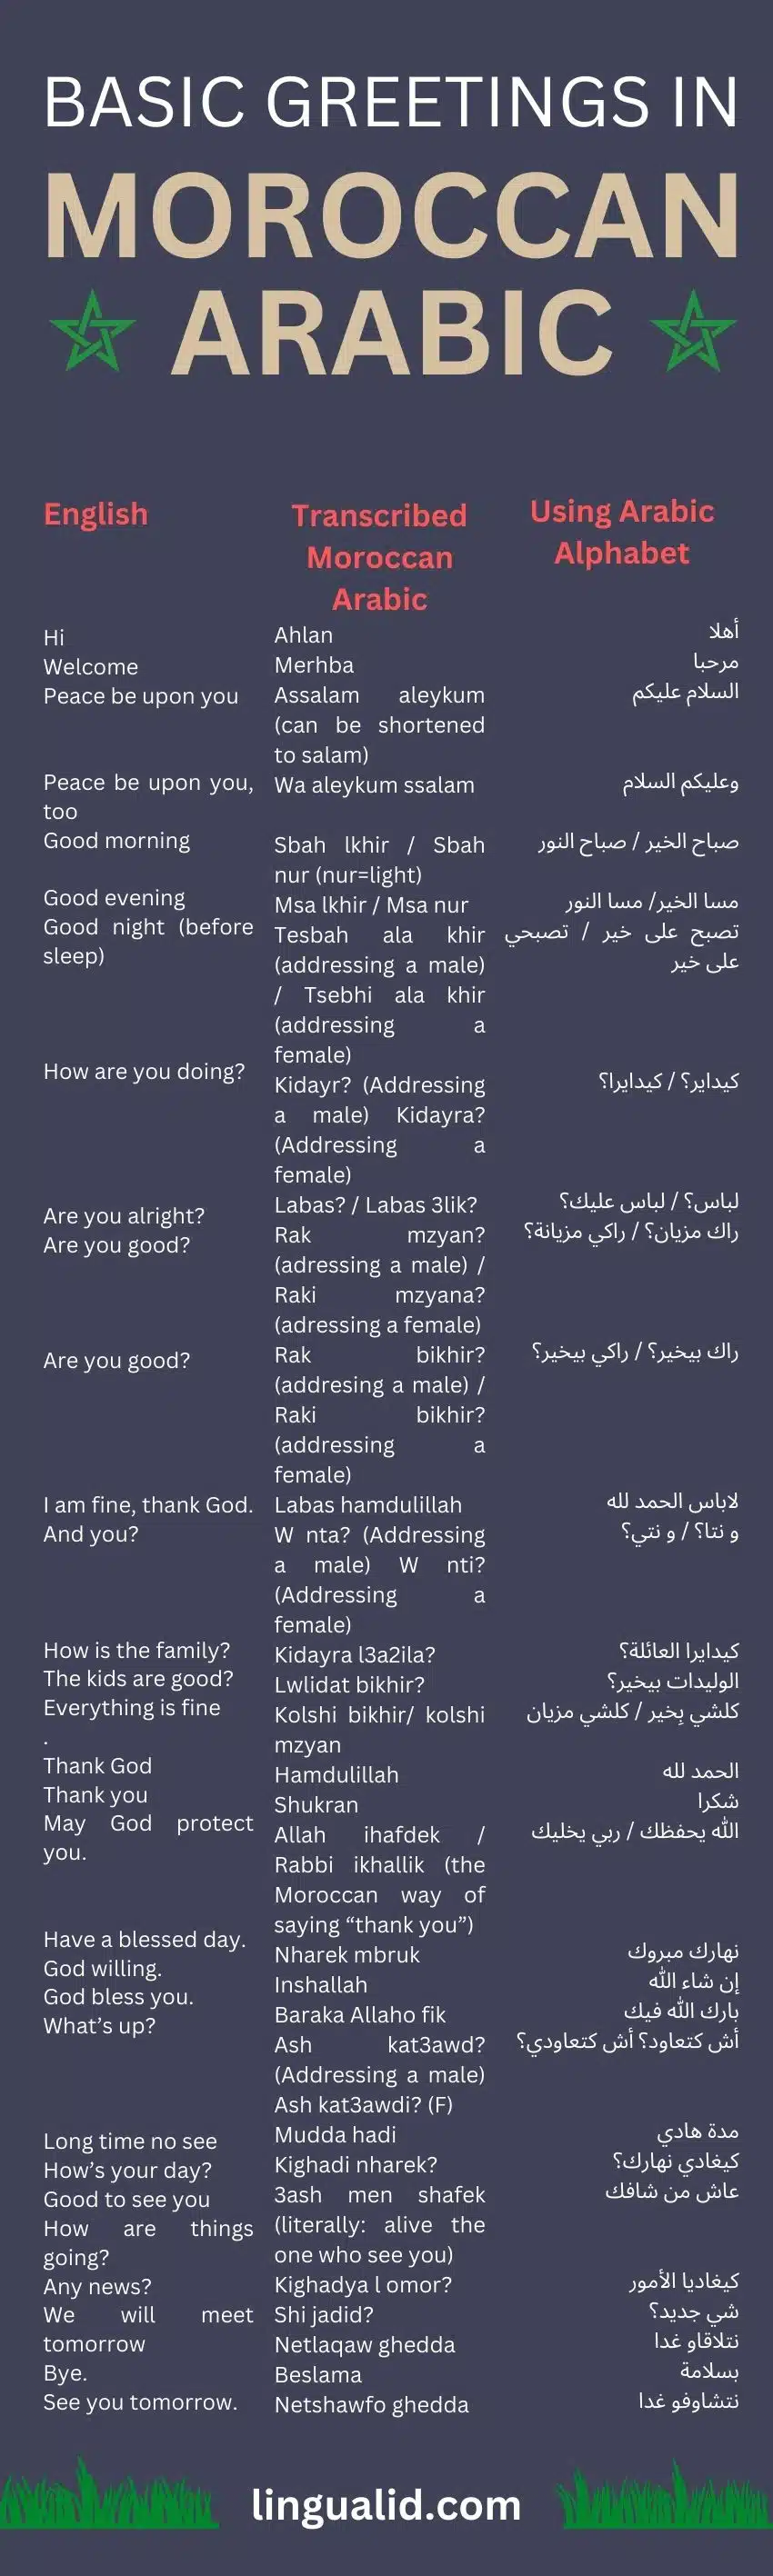 Greetings in Moroccan Arabic Darija